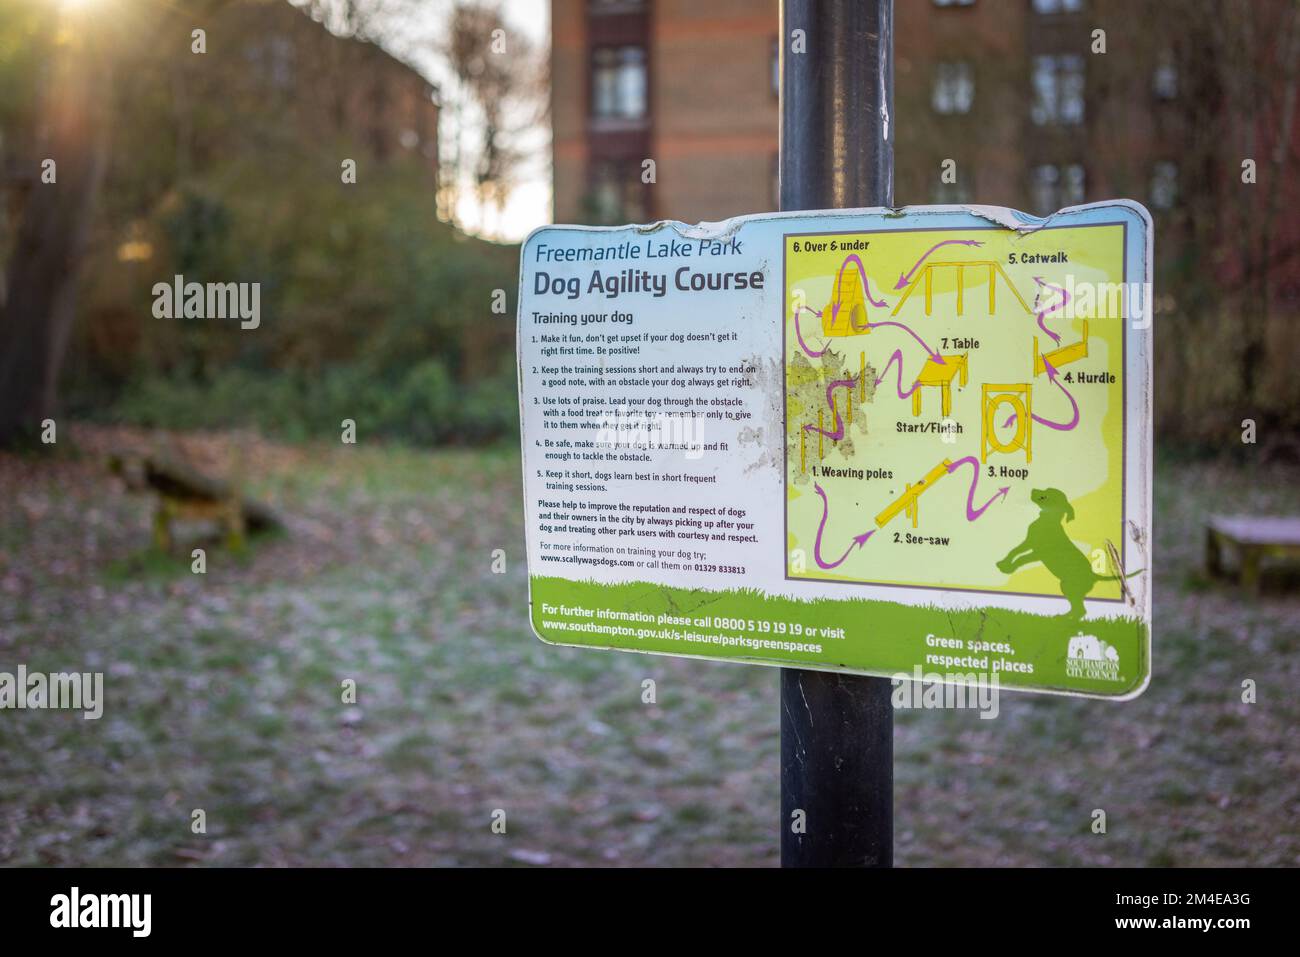 Dog agility course sign, England, UK Stock Photo